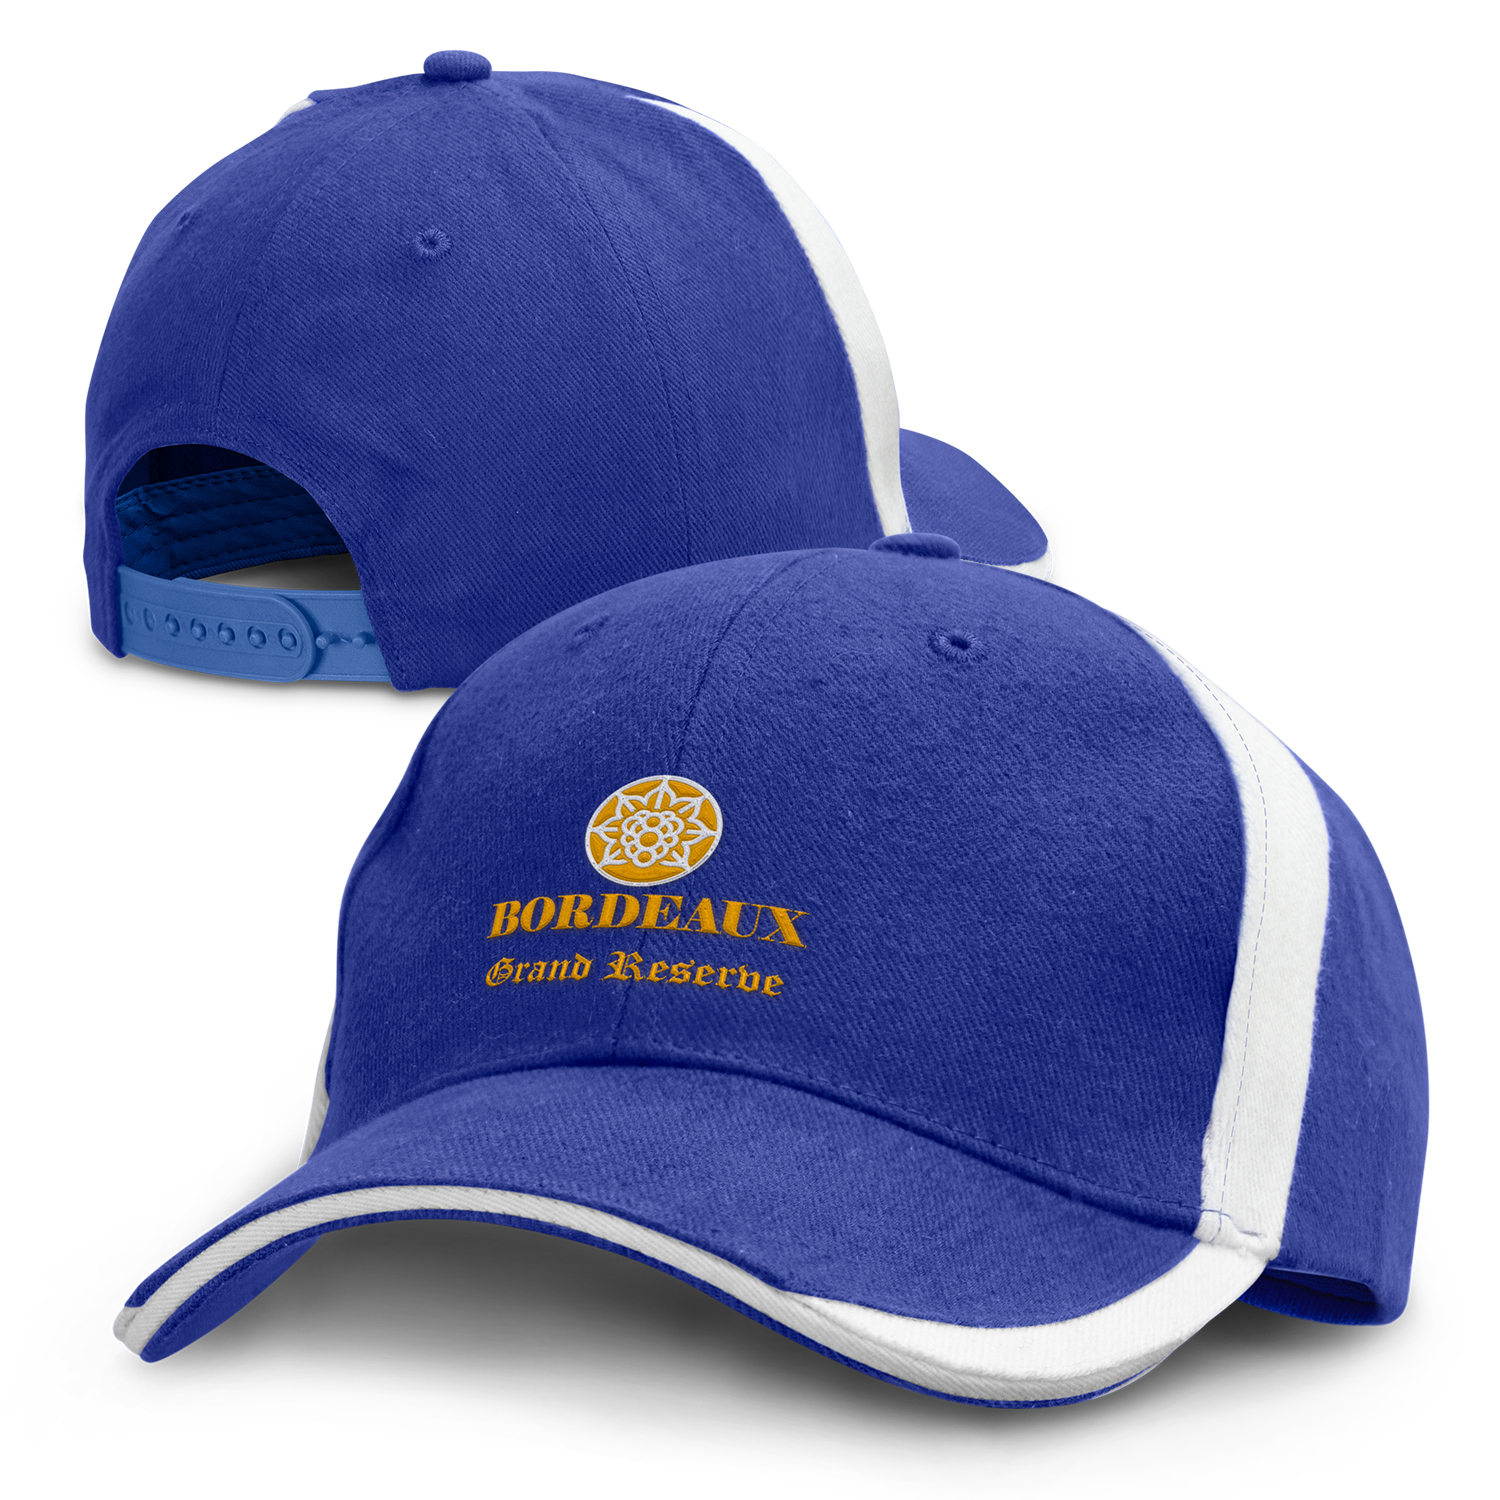 Headwear Express Oceania Cap cap